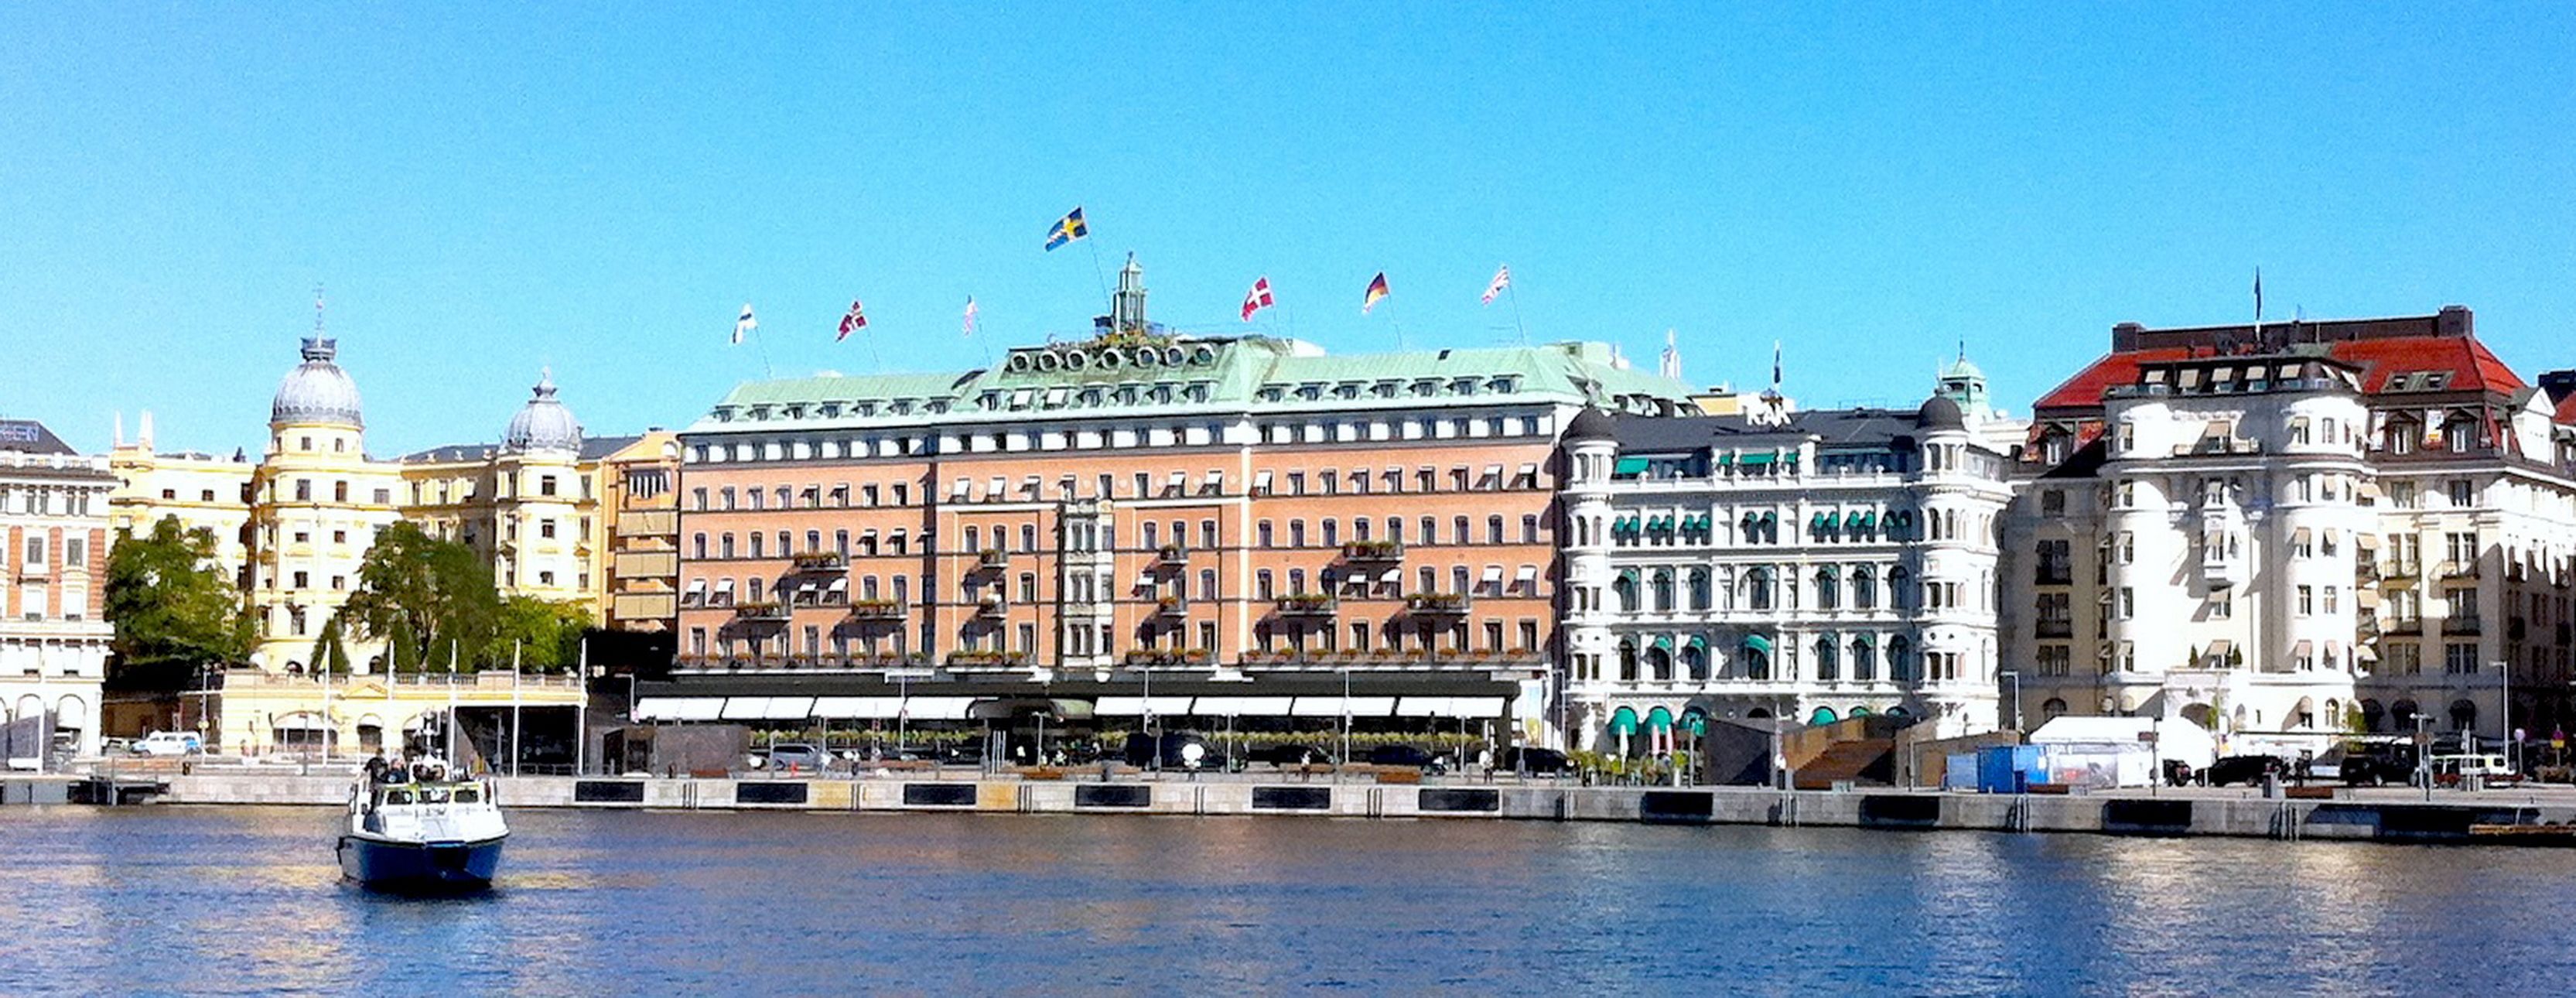 Släpvagnar i Stockholm Vi levererar där du bor